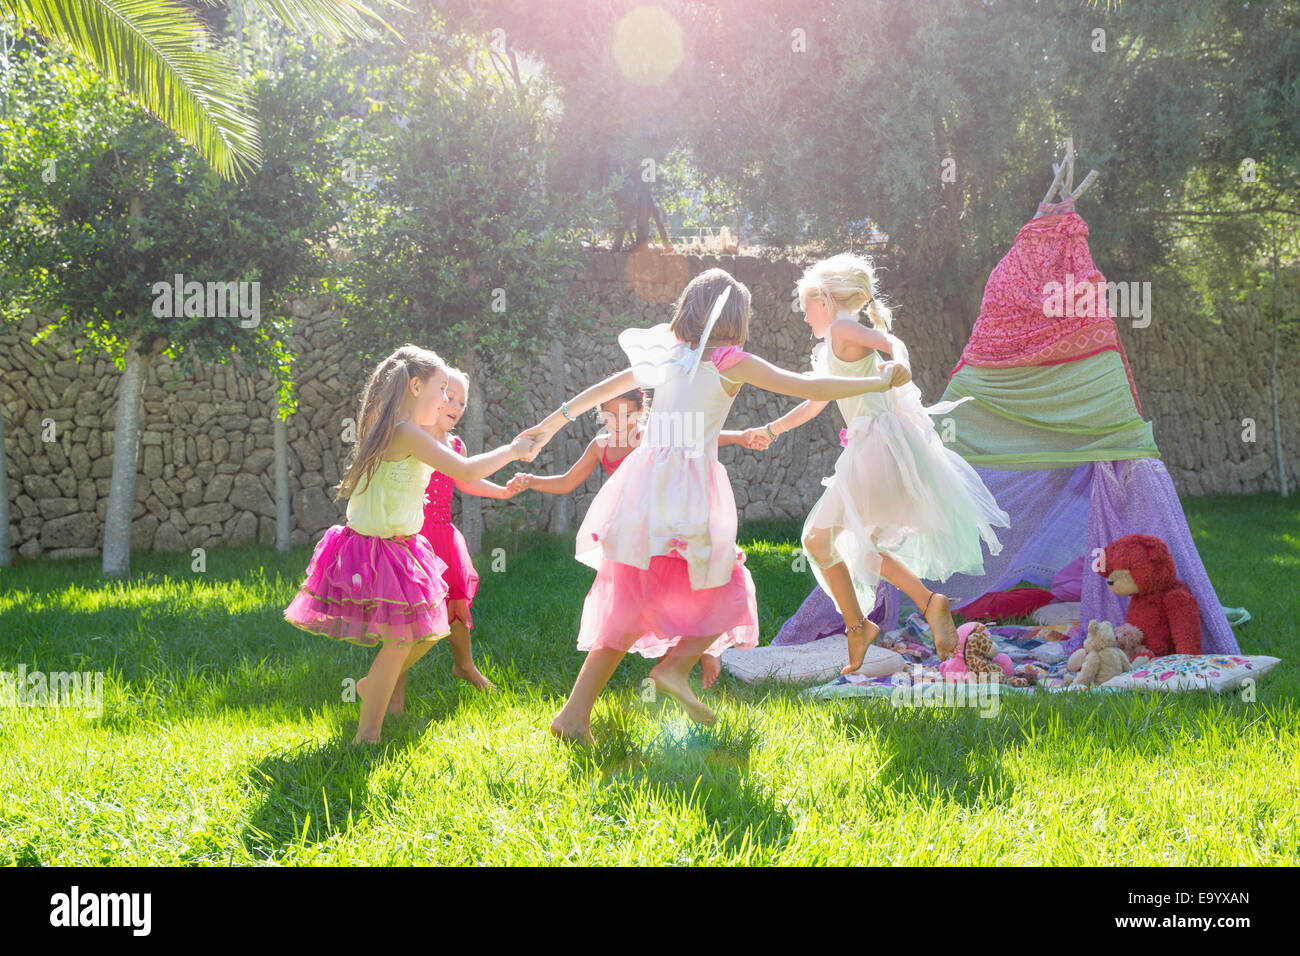 Cinco chicas en traje de hadas jugando en el jardín Foto de stock